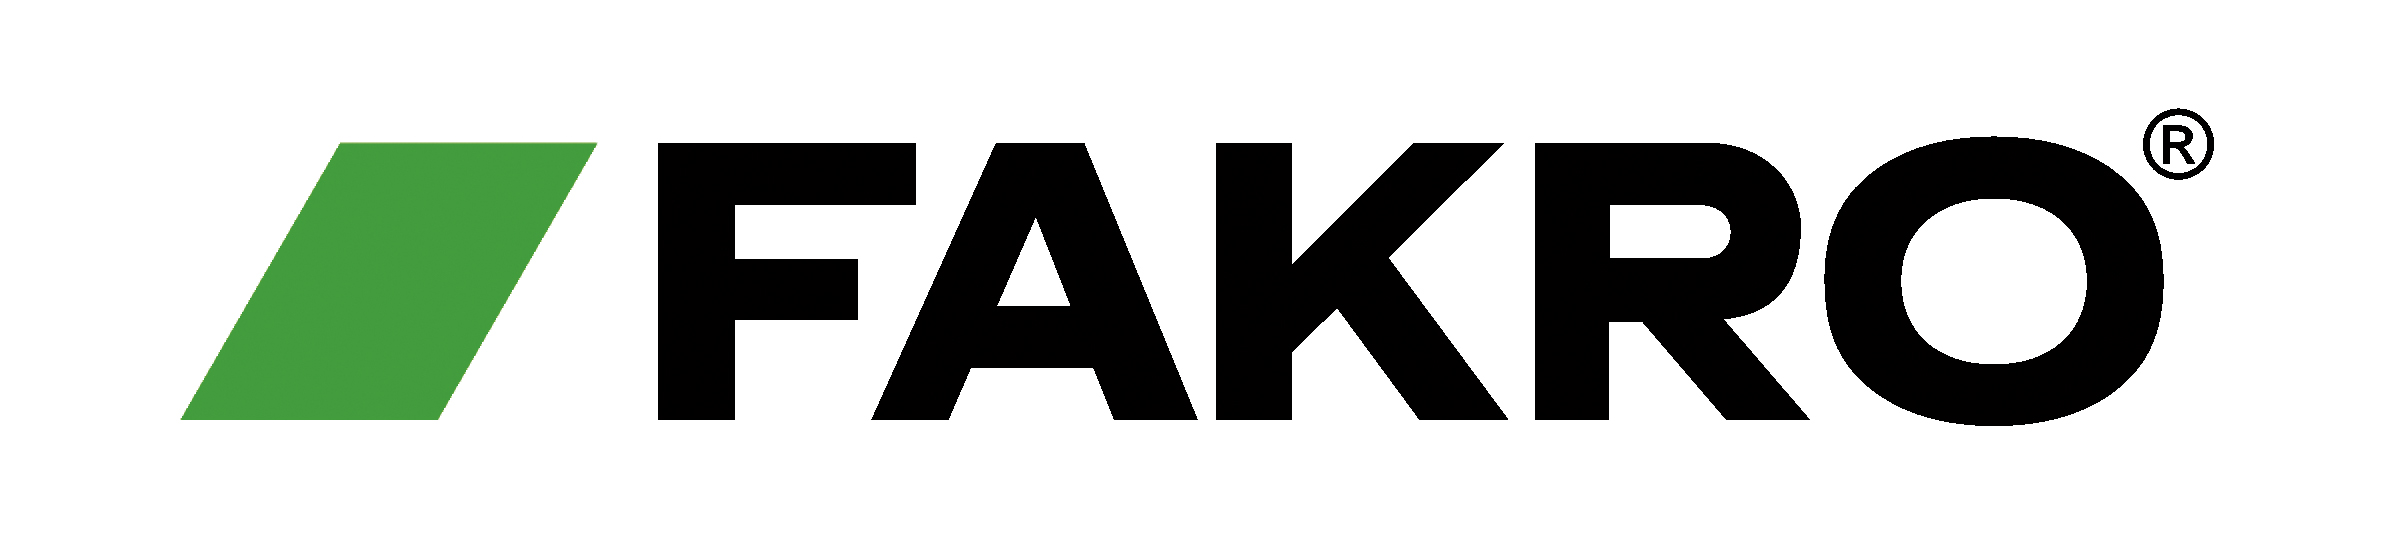 logo_fakro_rgb